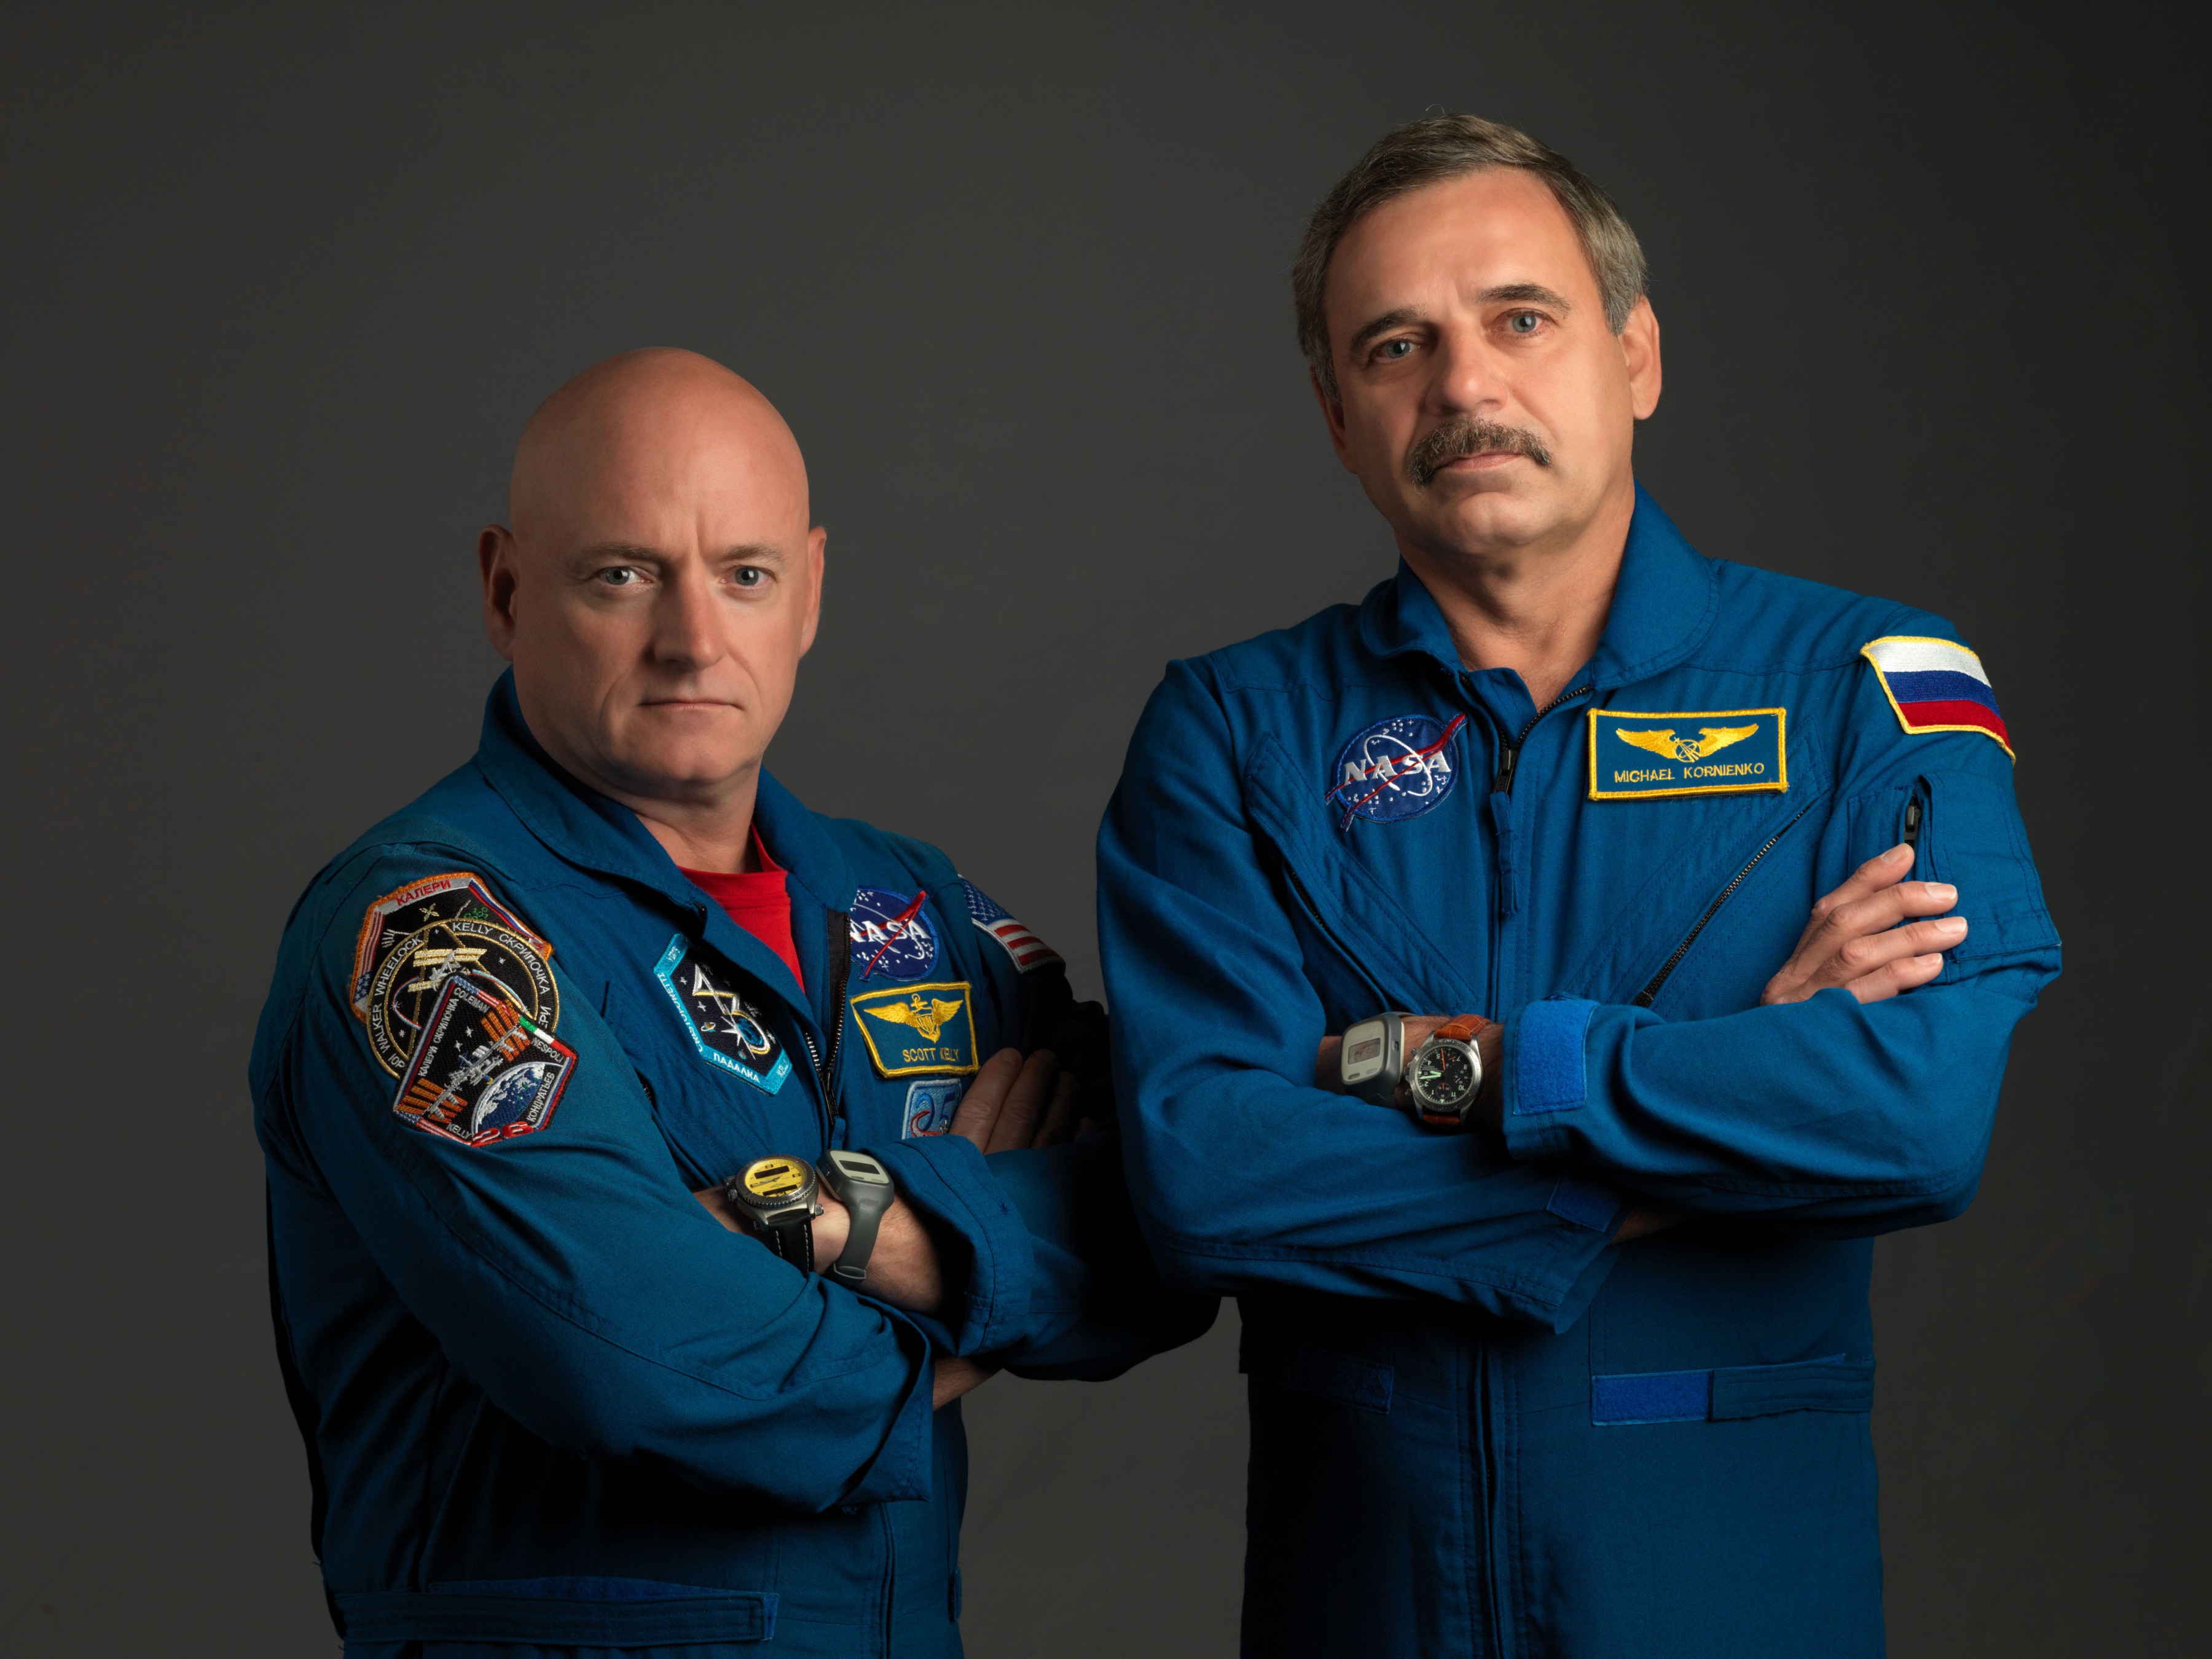 Scott Kelly e Mikhail Kornienko Credits: NASA